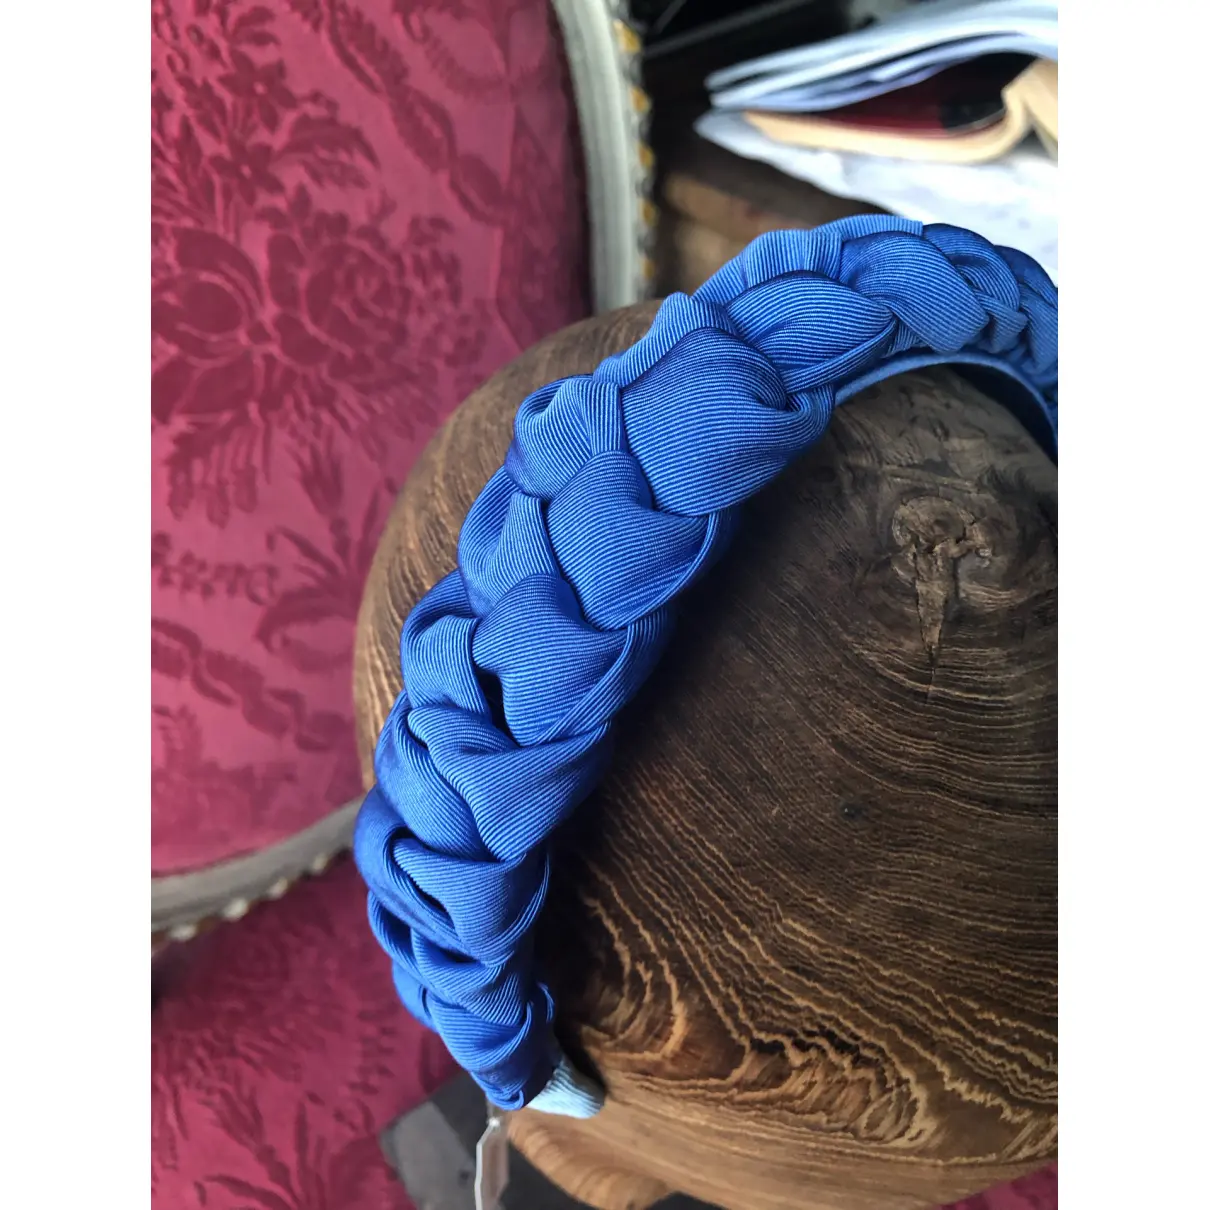 Buy Jennifer Behr Cloth hair accessory online